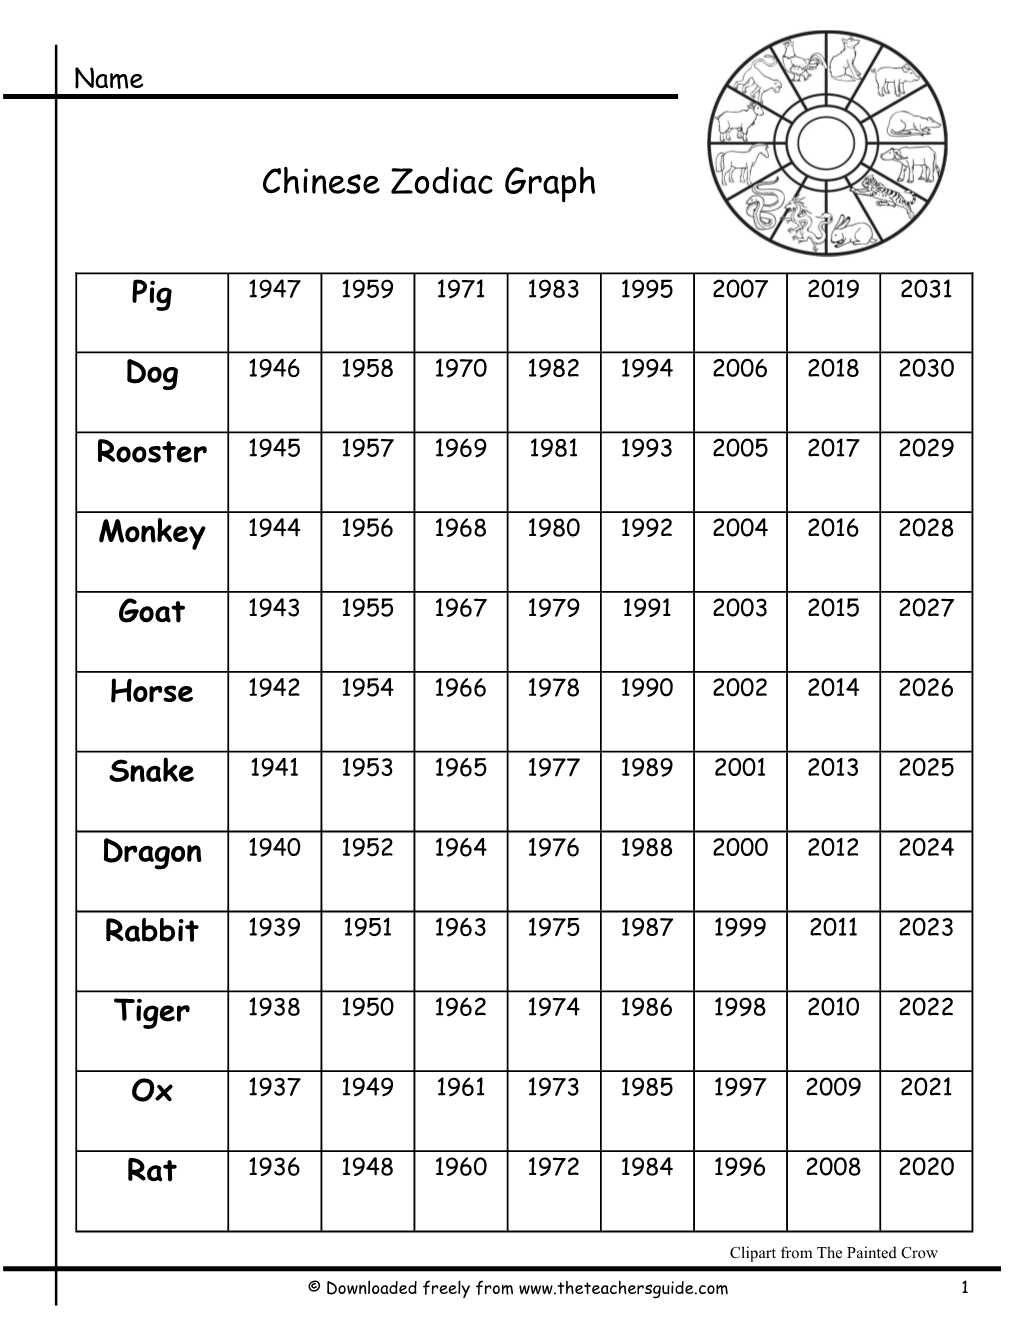 Chinese Zodiac Graph